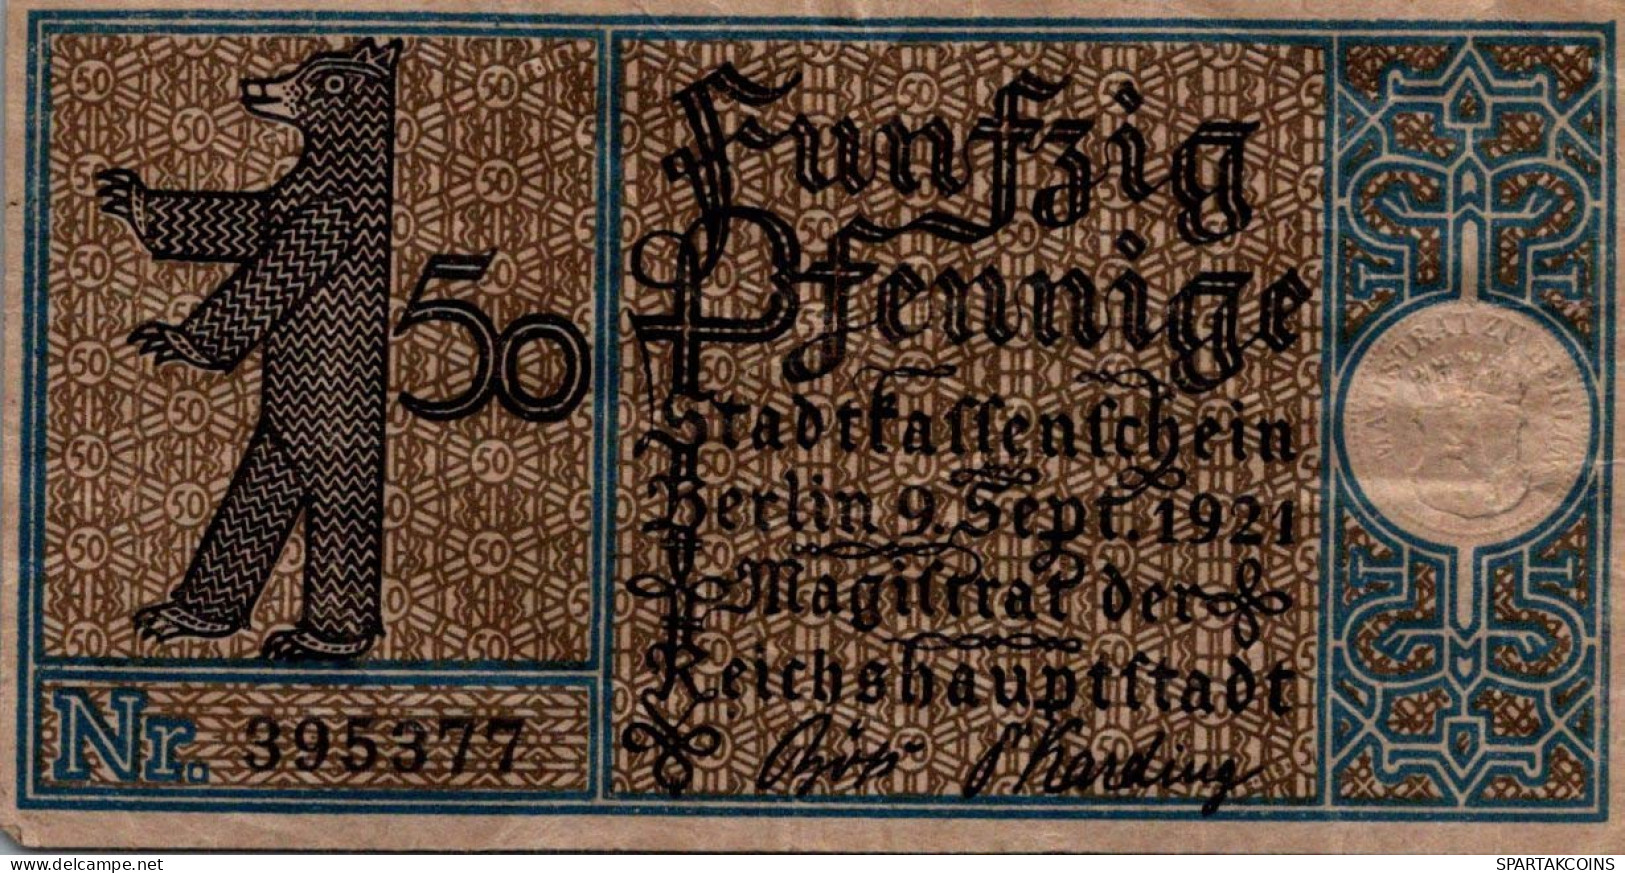 50 PFENNIG 1921 Stadt BERLIN DEUTSCHLAND Notgeld Banknote #PG390 - Lokale Ausgaben